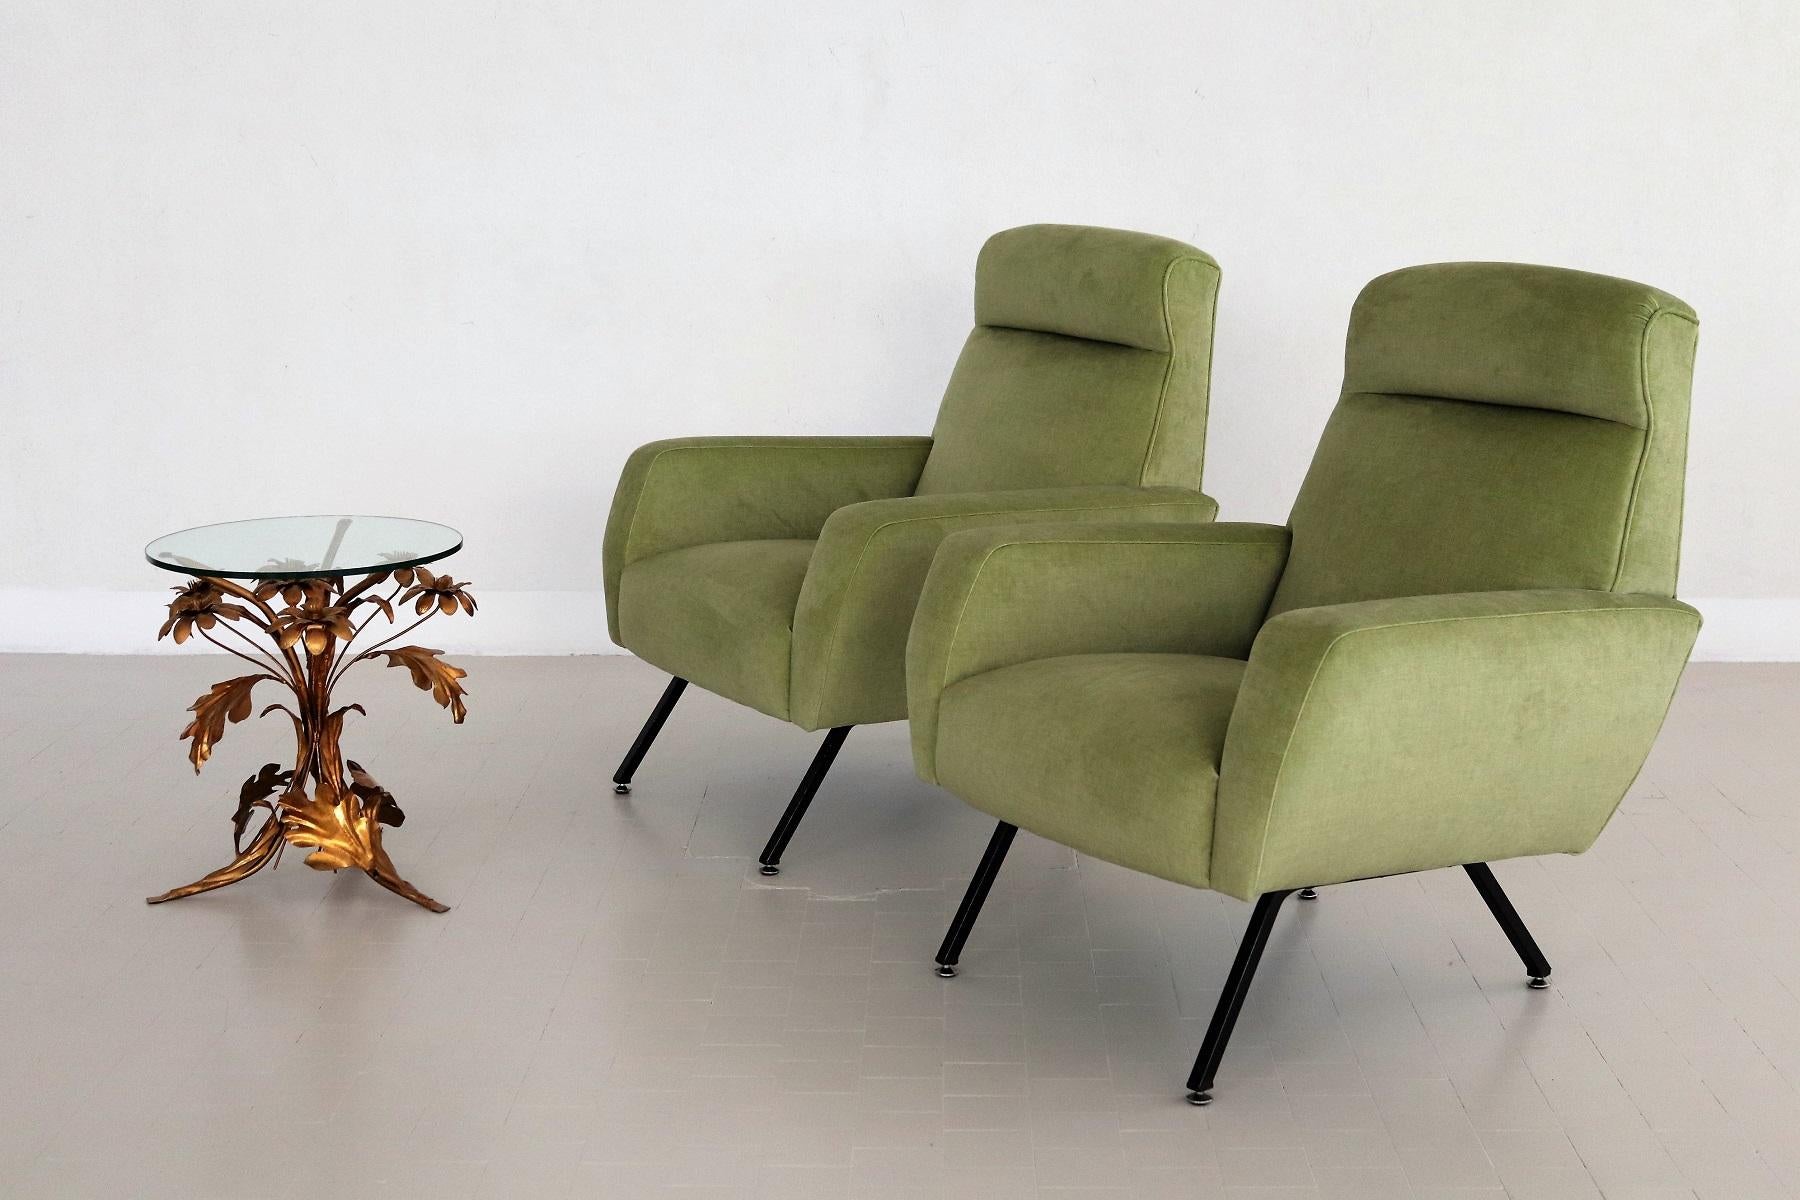 Italian Midcentury Armchairs Re-Upholstered in Green Velvet, 1960s For Sale 2